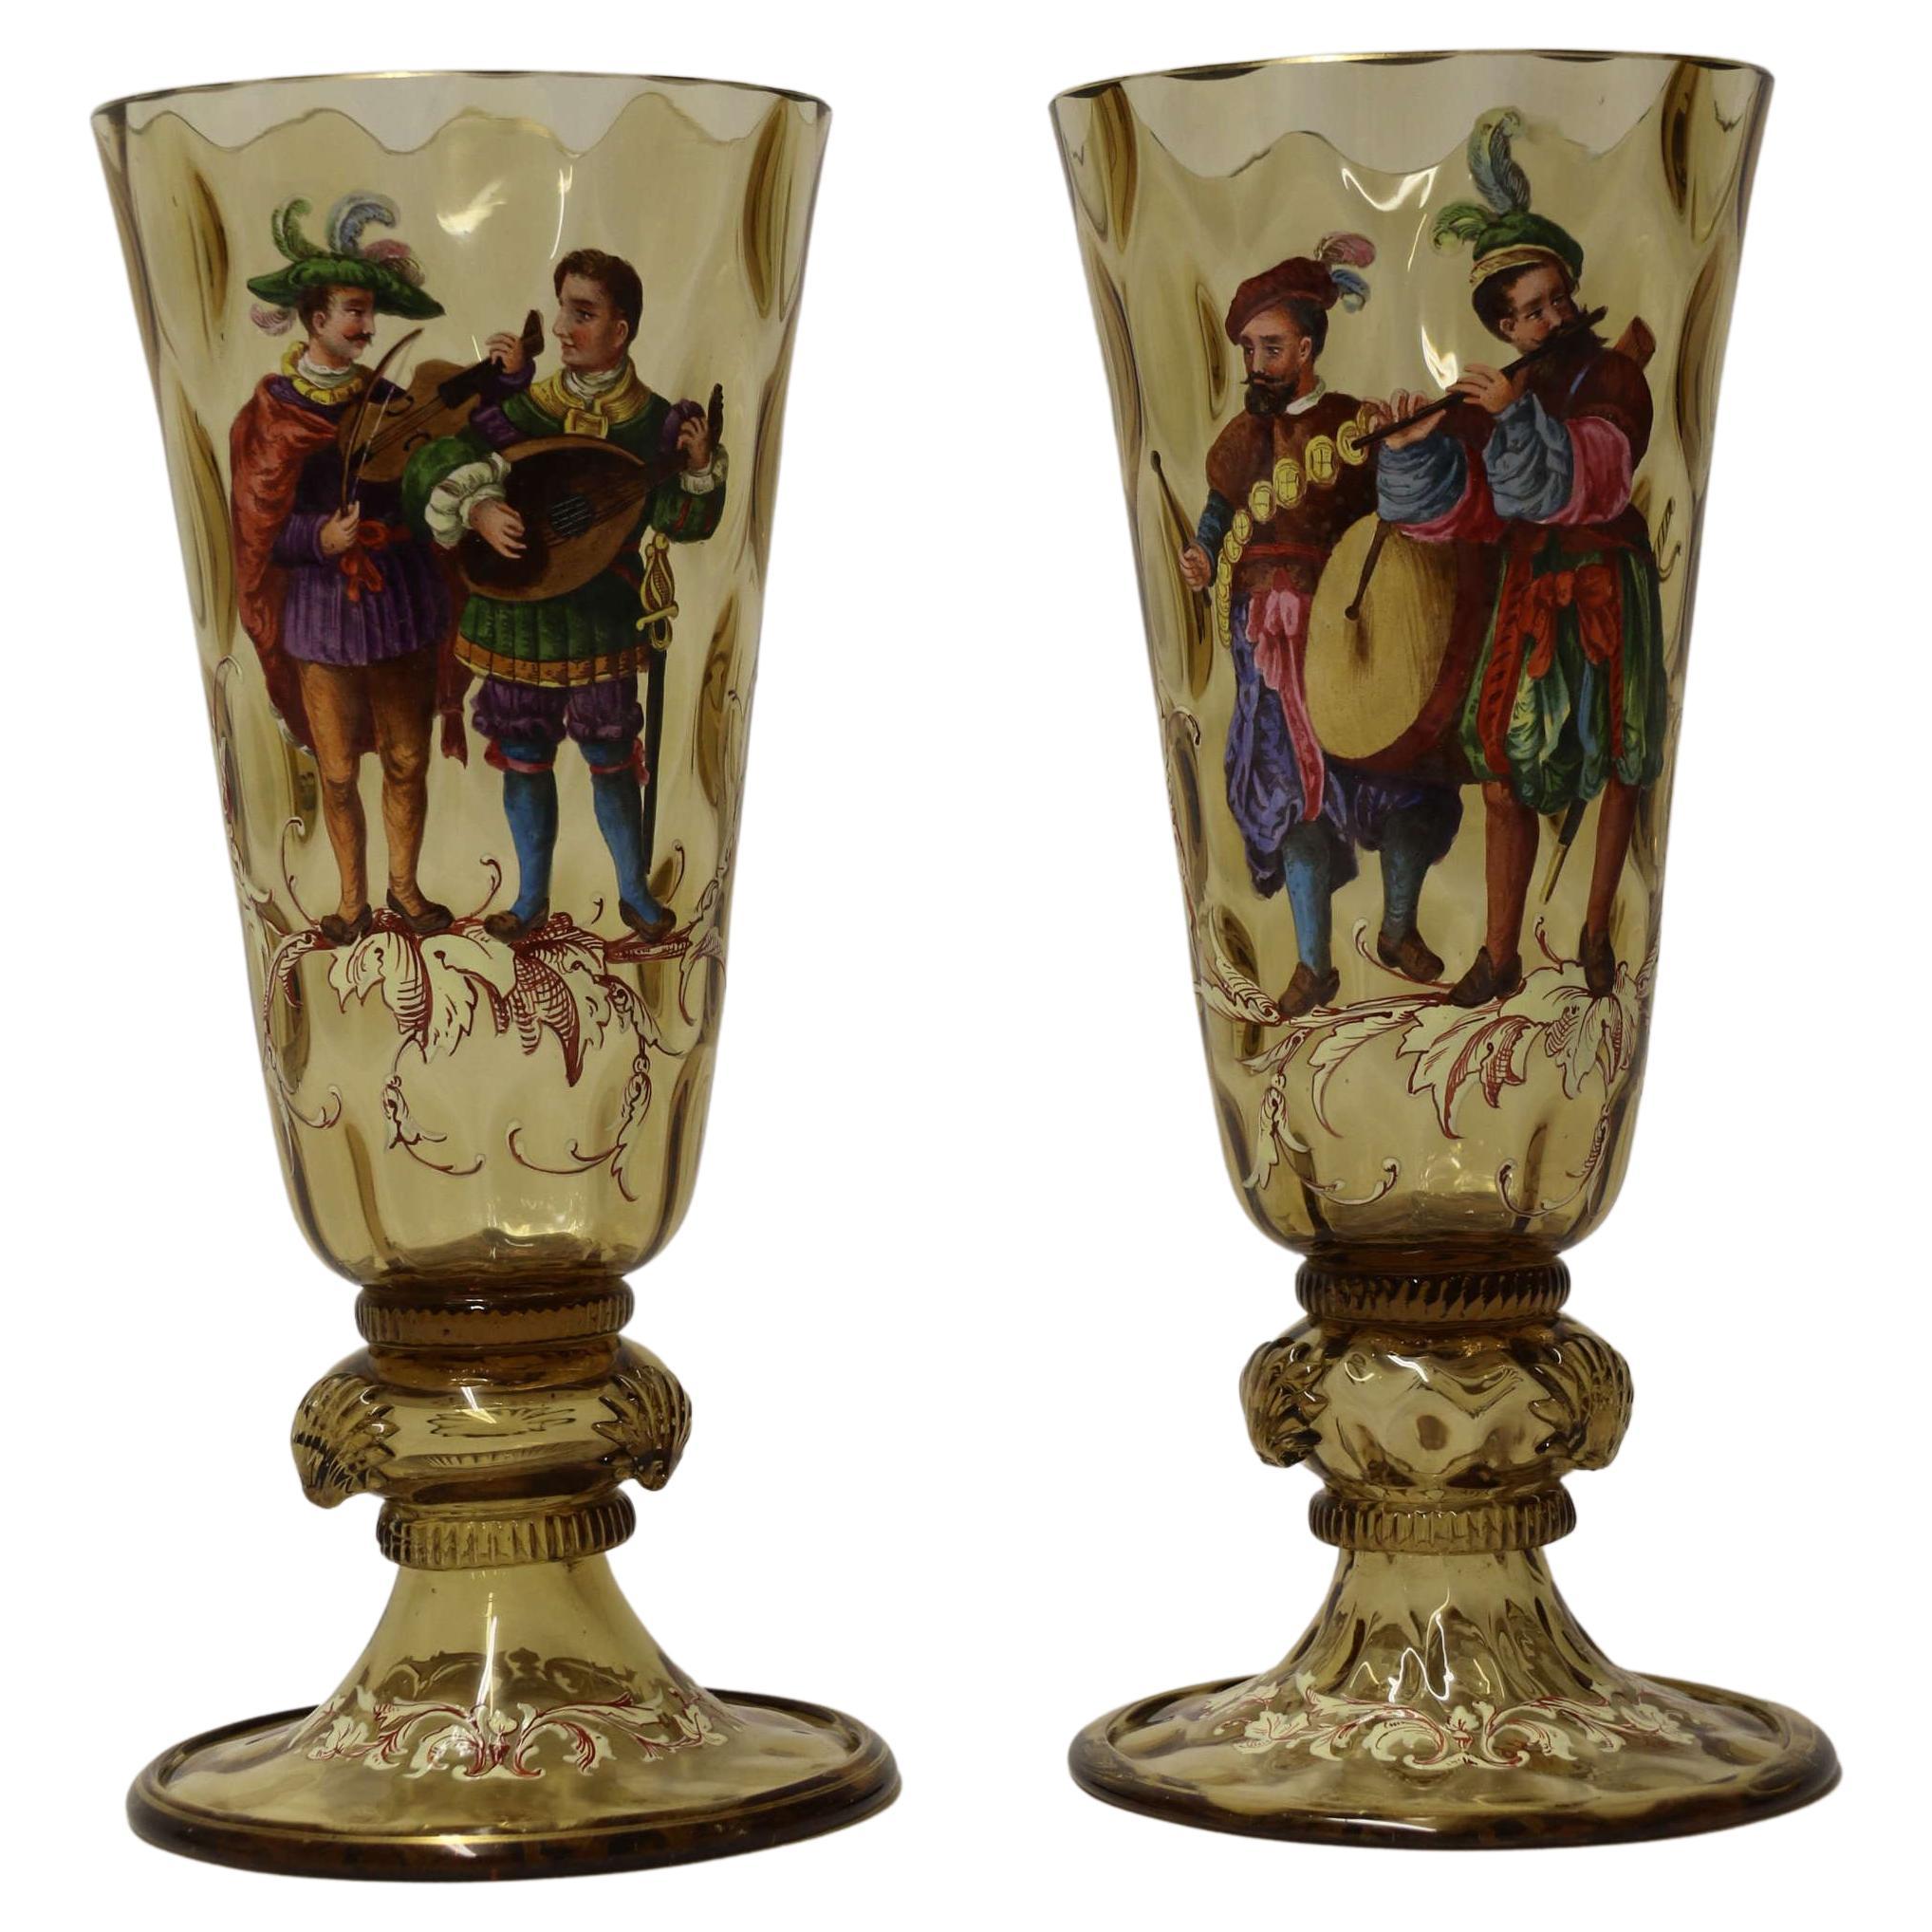 Paire de gobelets de Bohème en verre émaillé figuratif du 19ème siècle, datant d'environ 1860